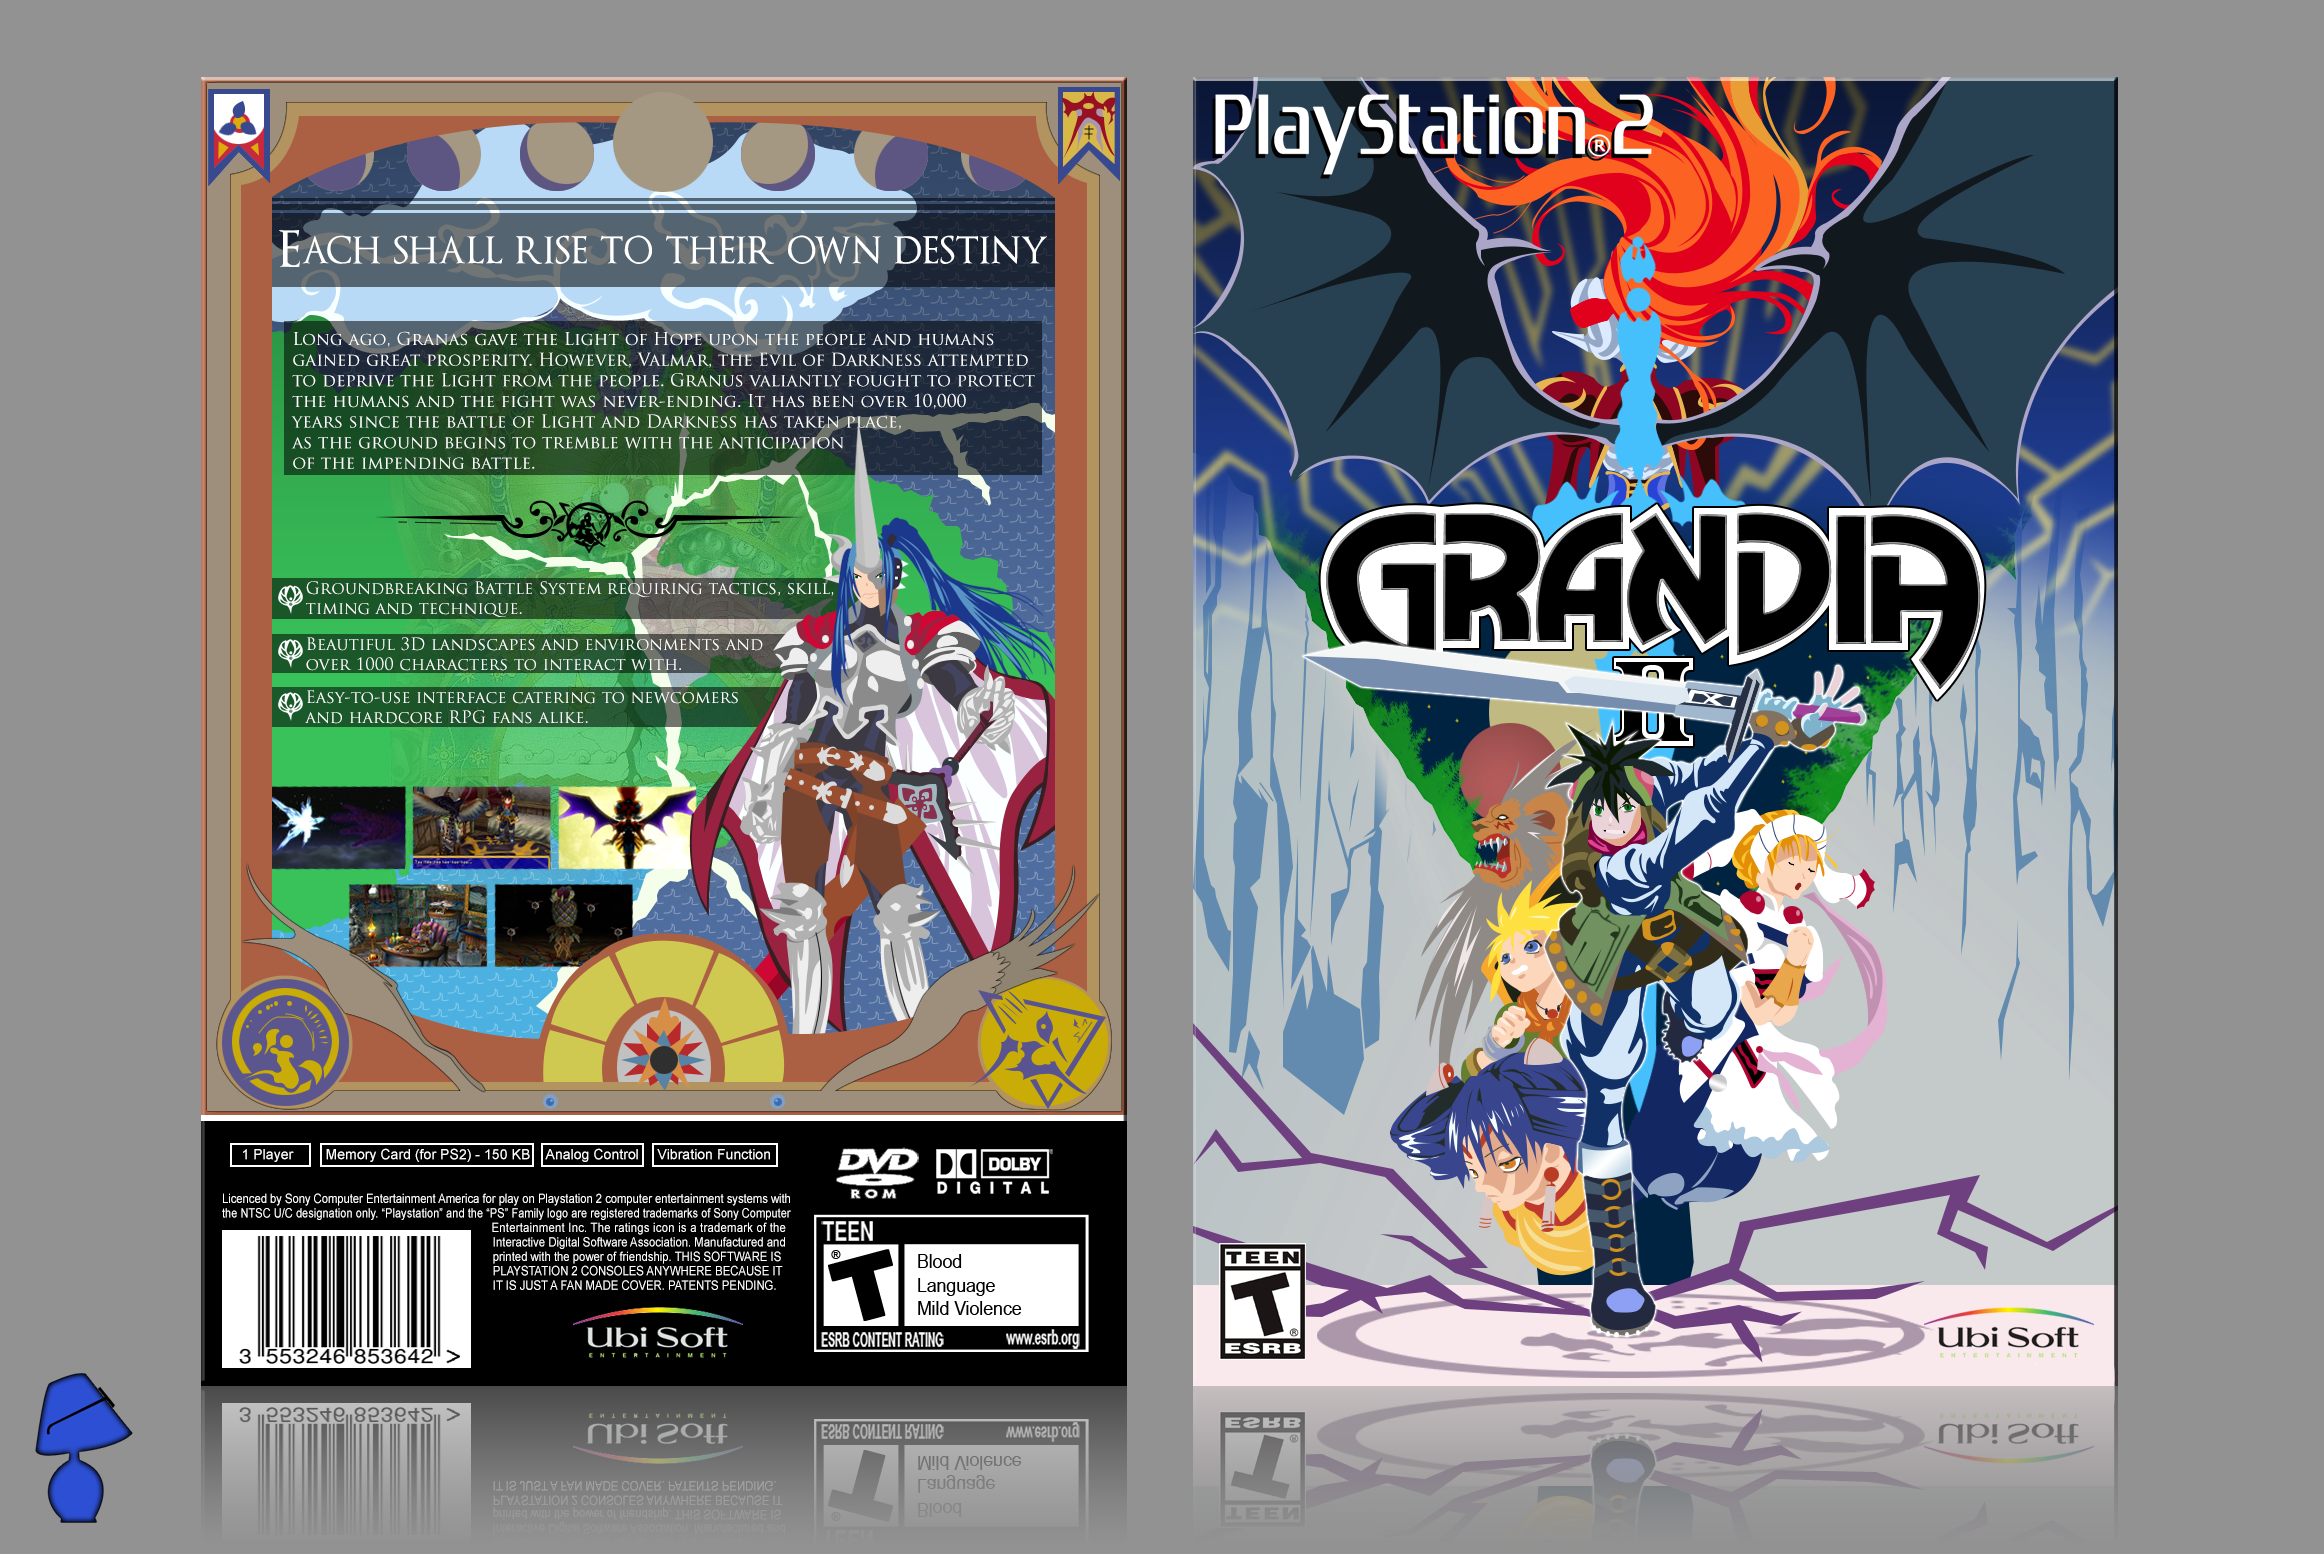 Grandia II box cover